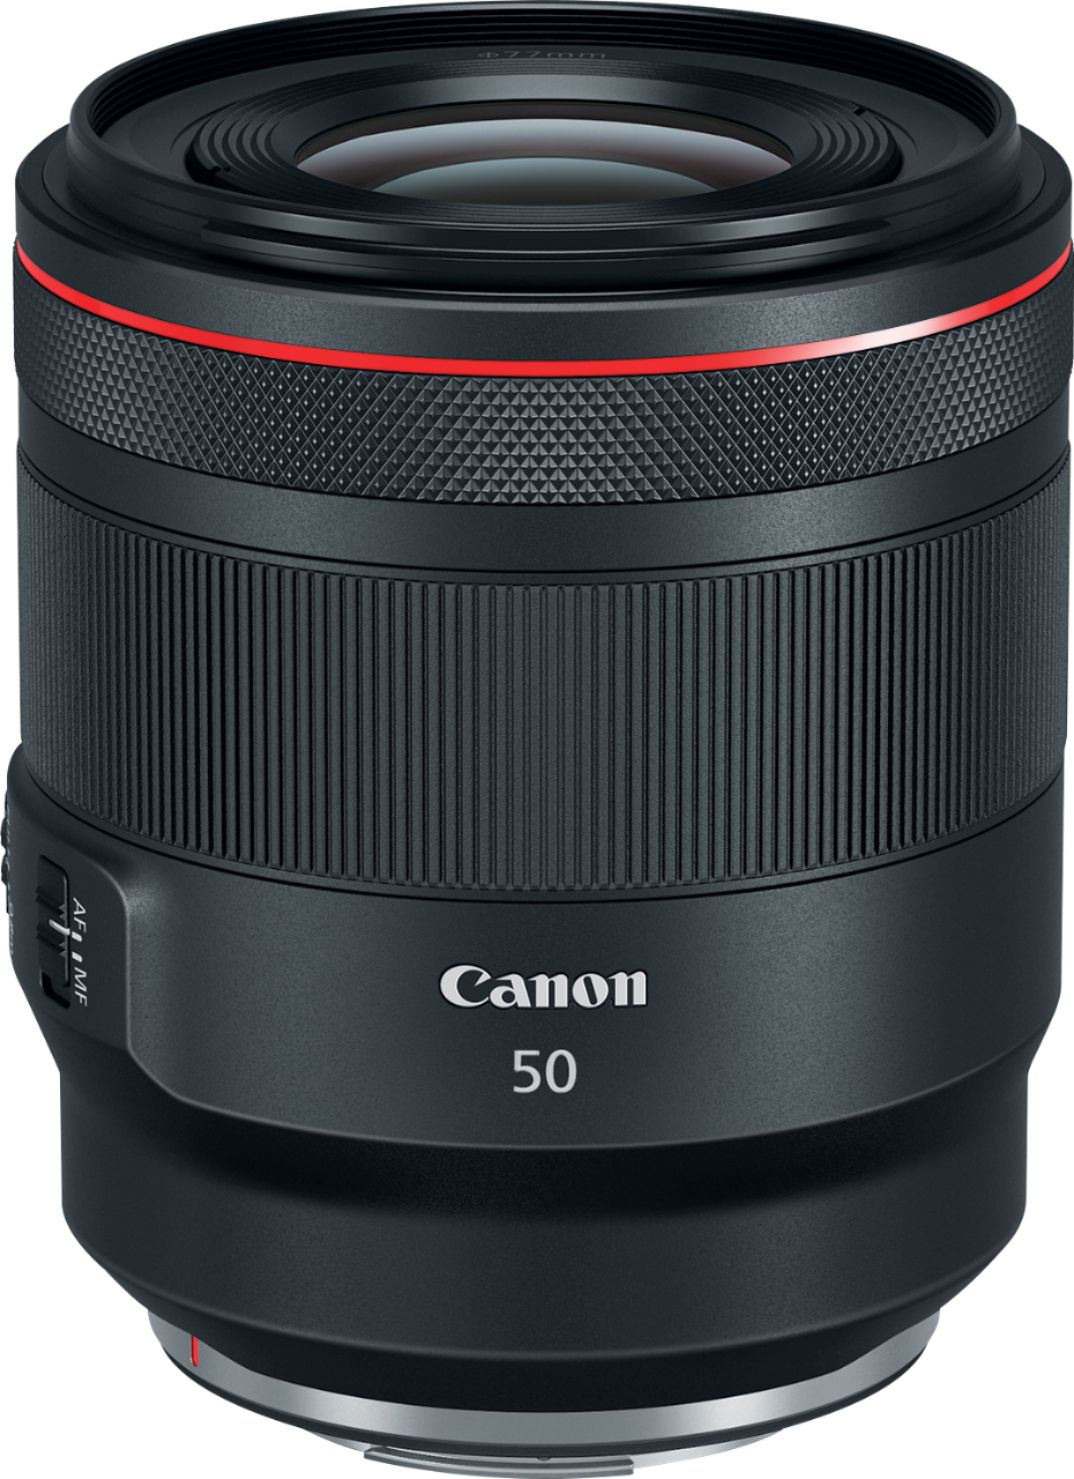 Canon RF 50mm F1.2 L USM Standard Prime Lens for EOS R Cameras Black  2959C002 - Best Buy